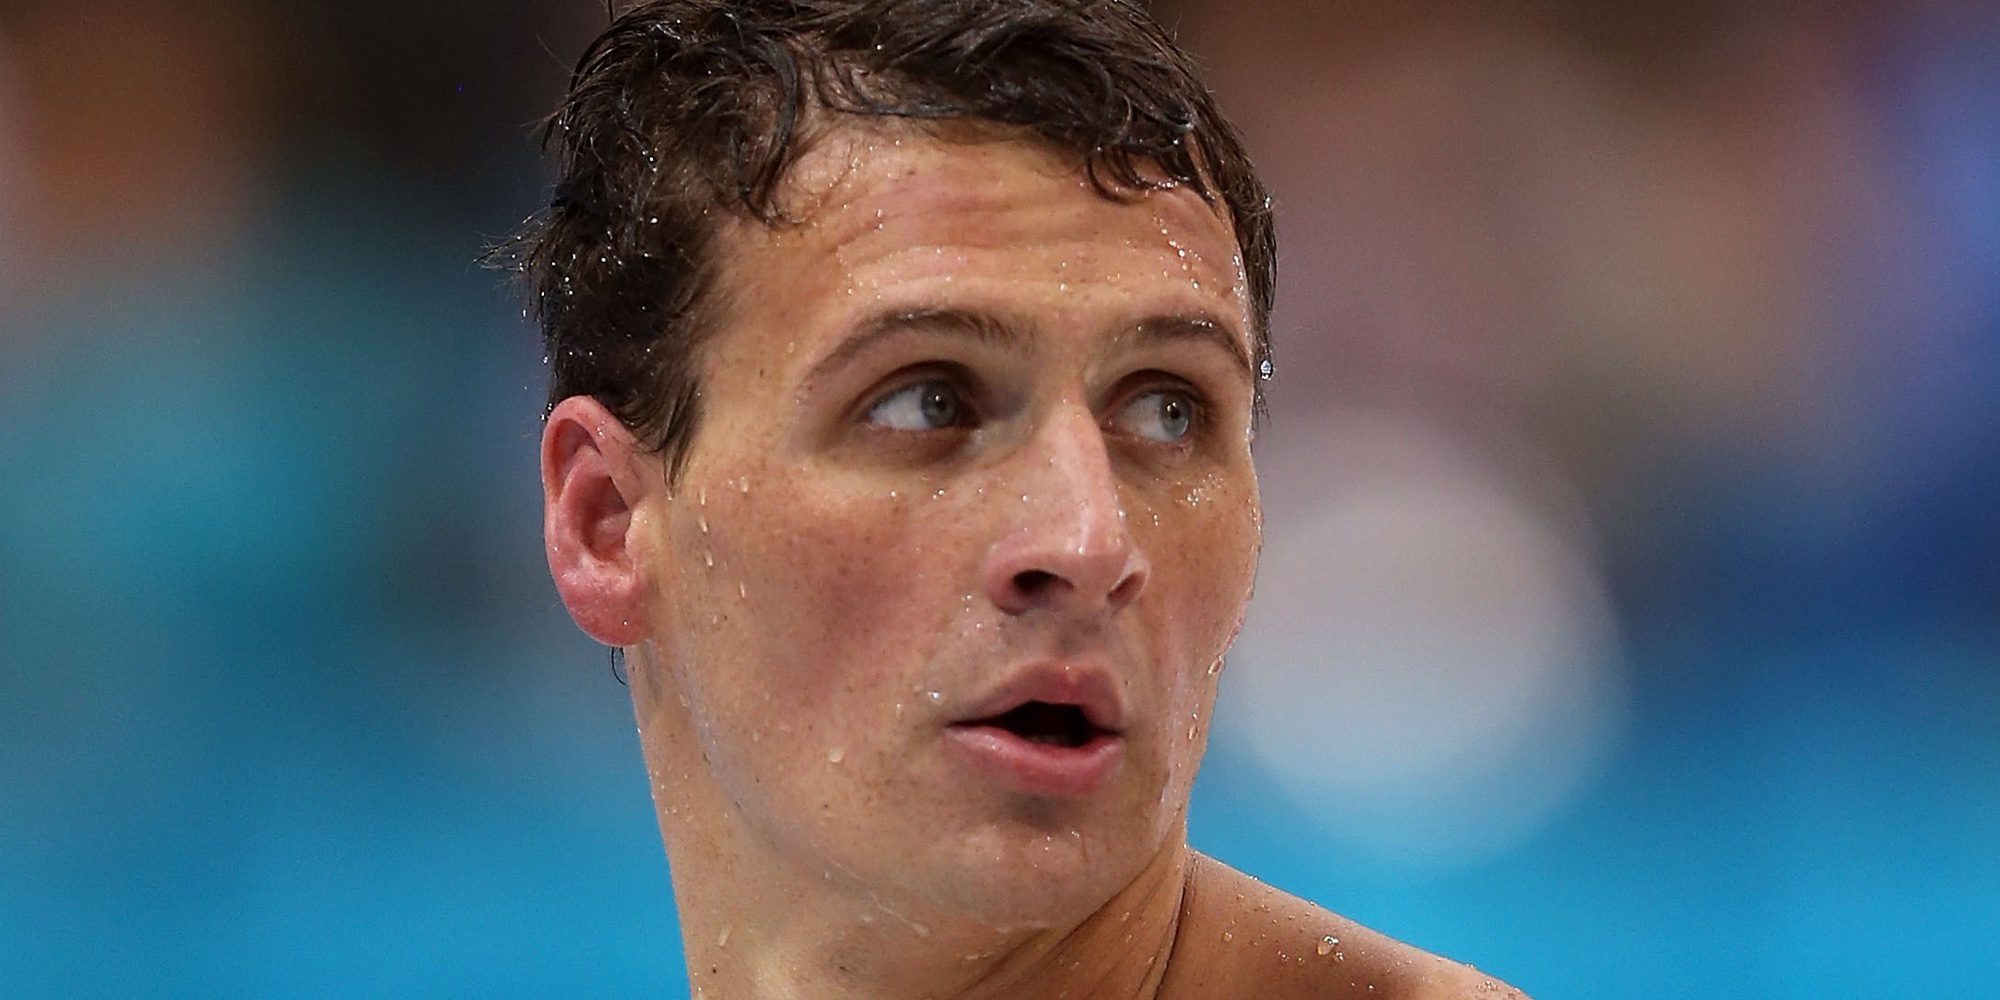 Dudas sobre el supuesto atraco a Ryan Lochte y otros tres nadadores olímpicos en Río 2016